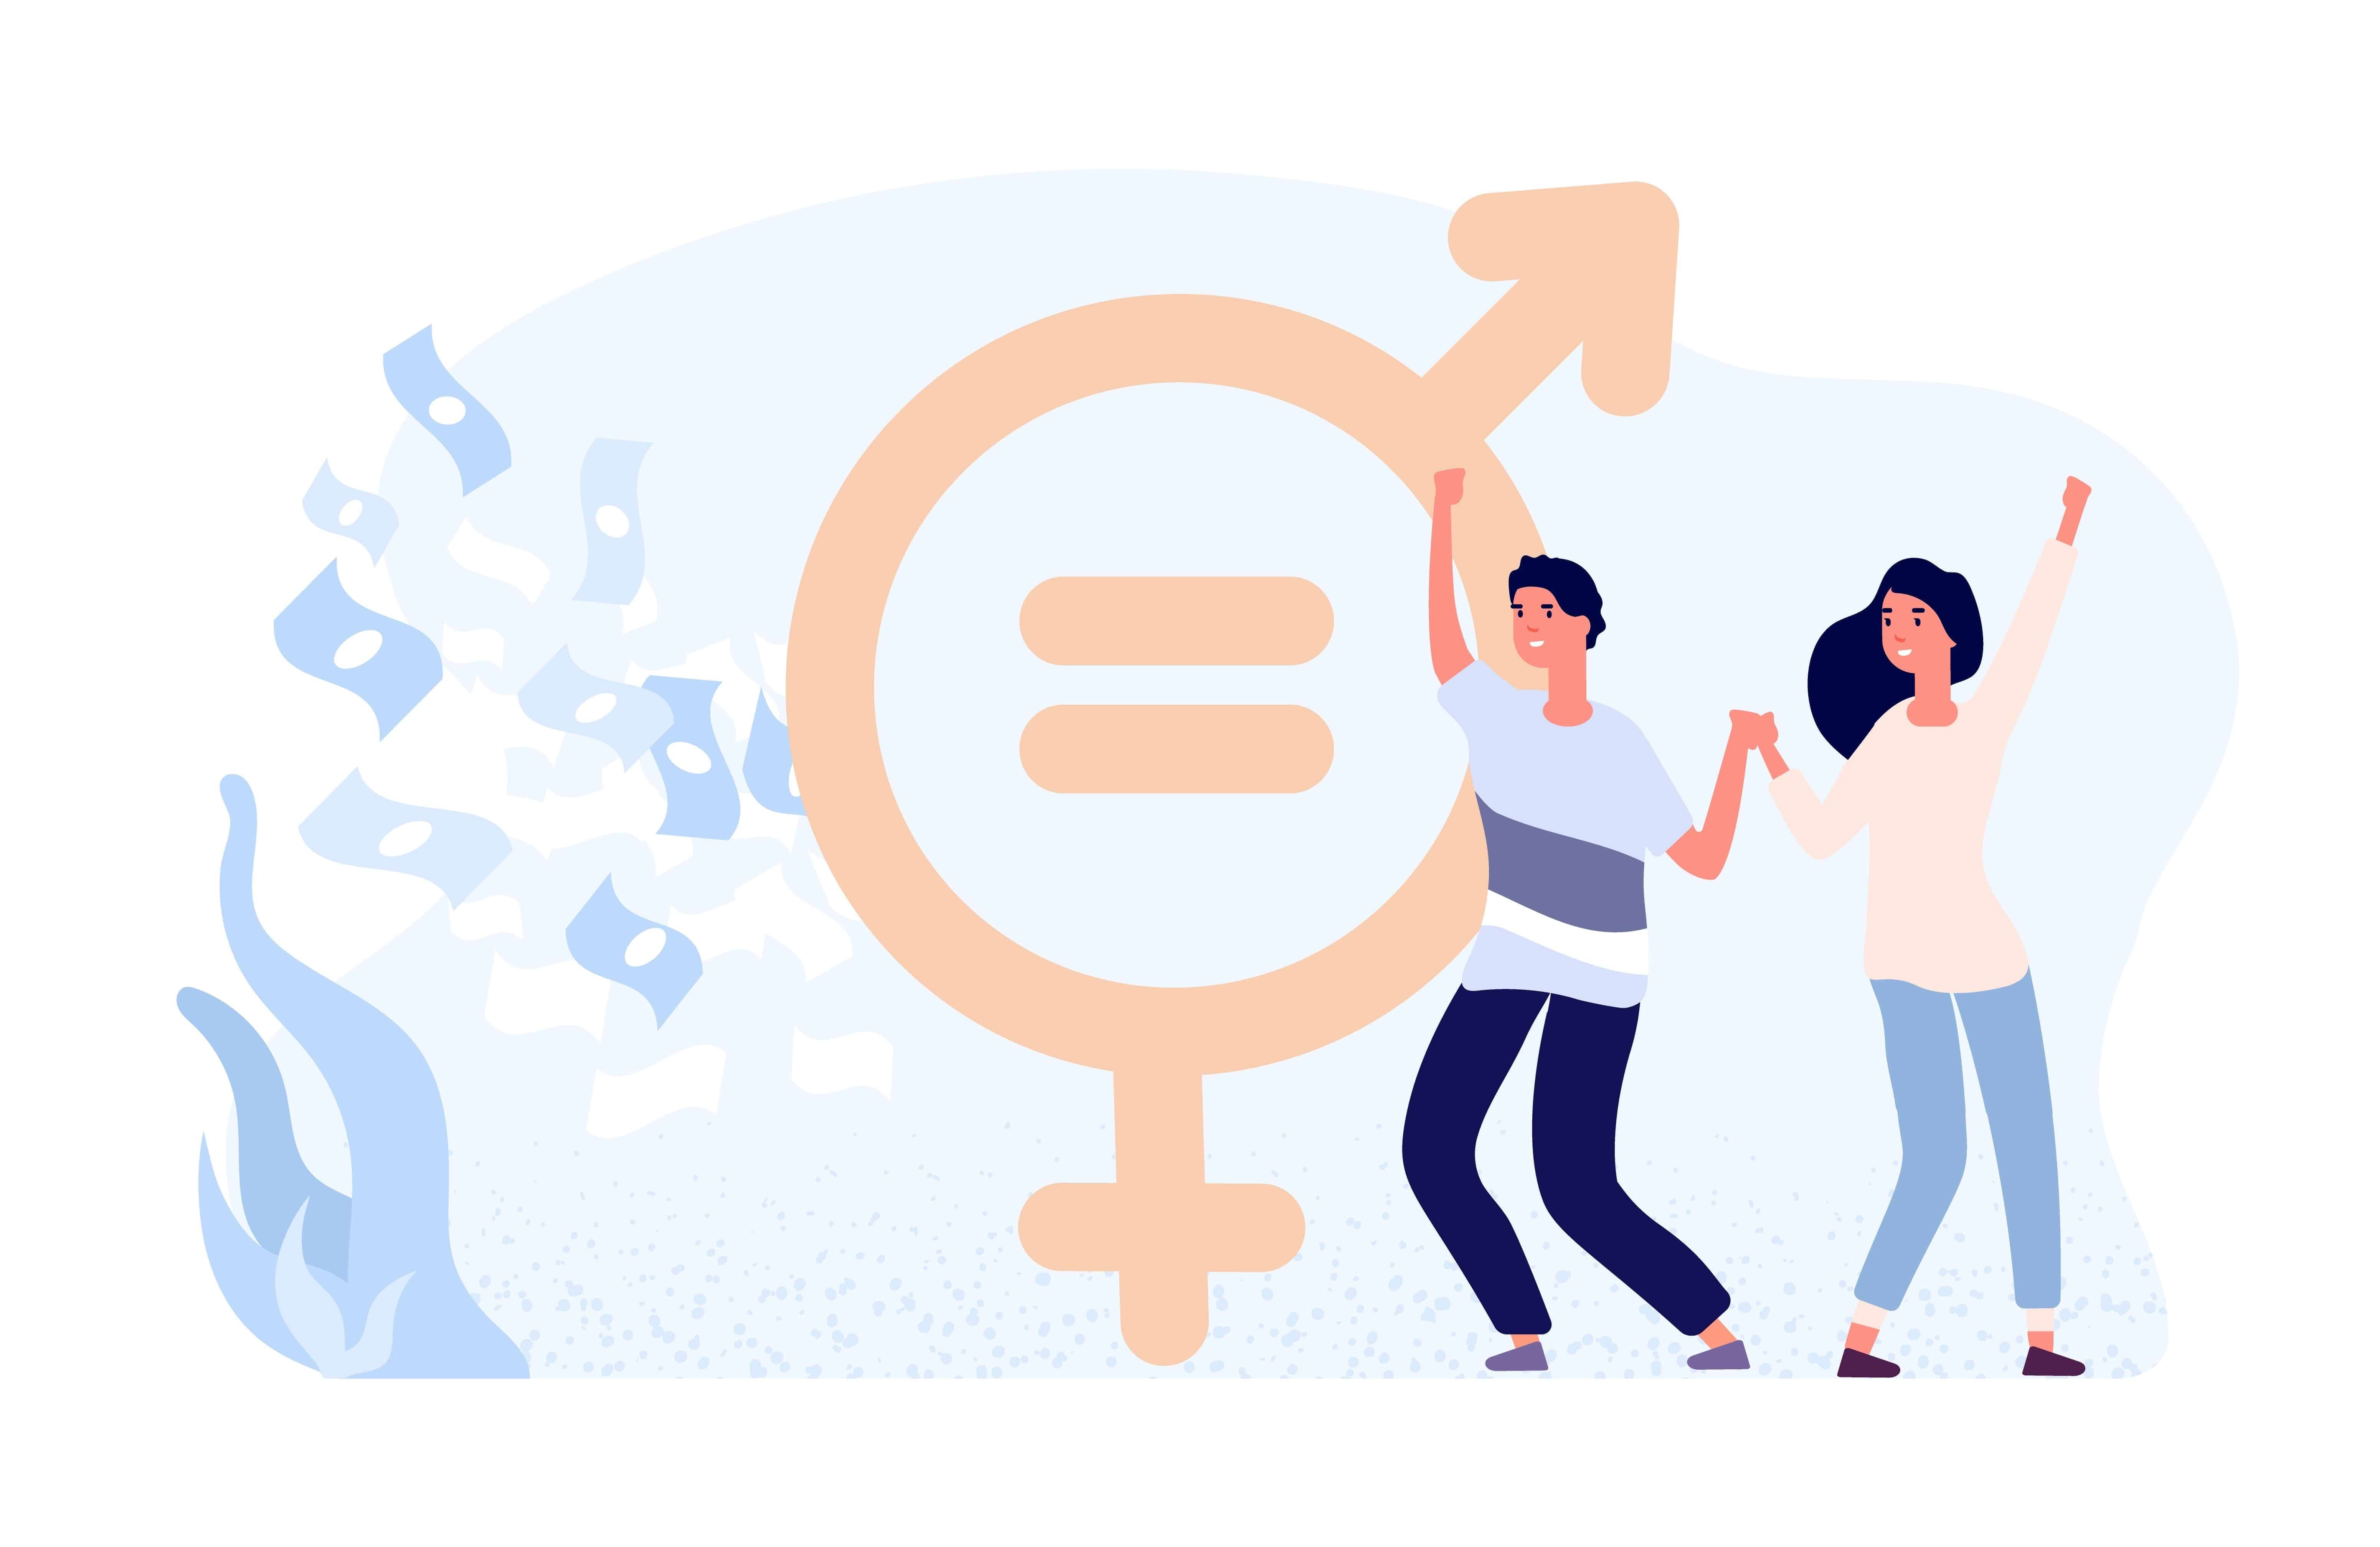 ilustração igualdade de gênero